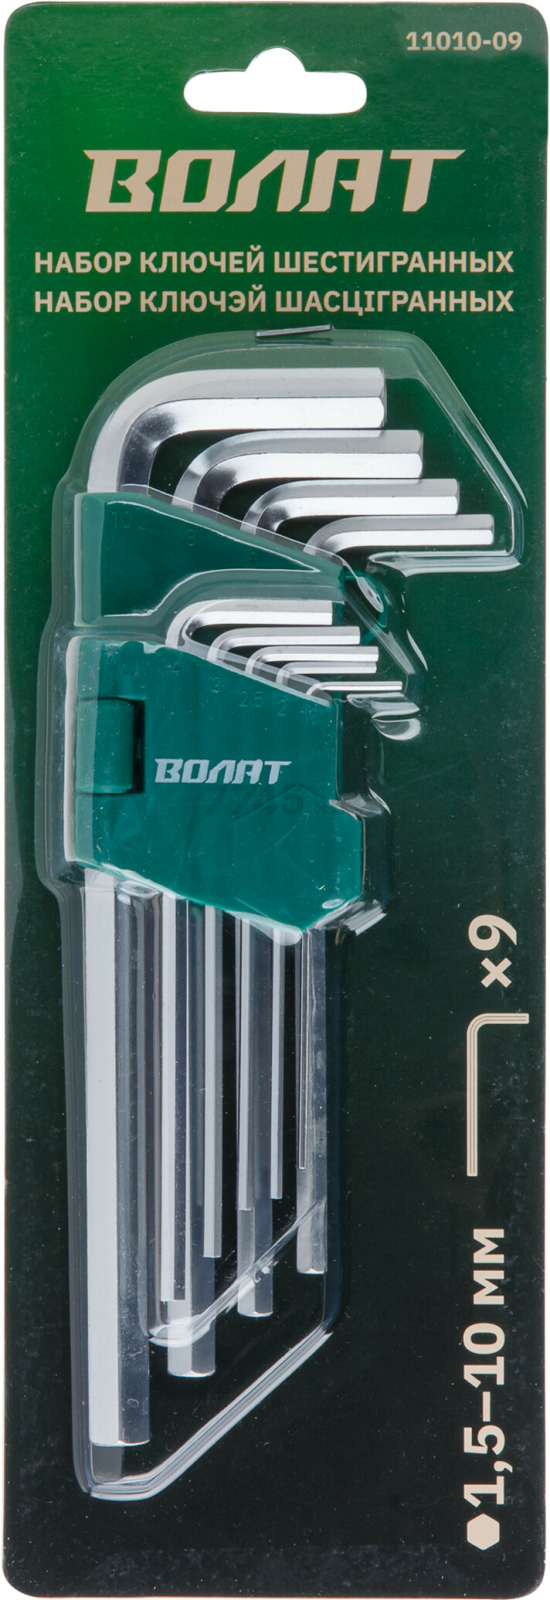 Набор ключей шестигранных 1,5-10 мм 9 предметов длинных ВОЛАТ (11010-09) - Фото 3